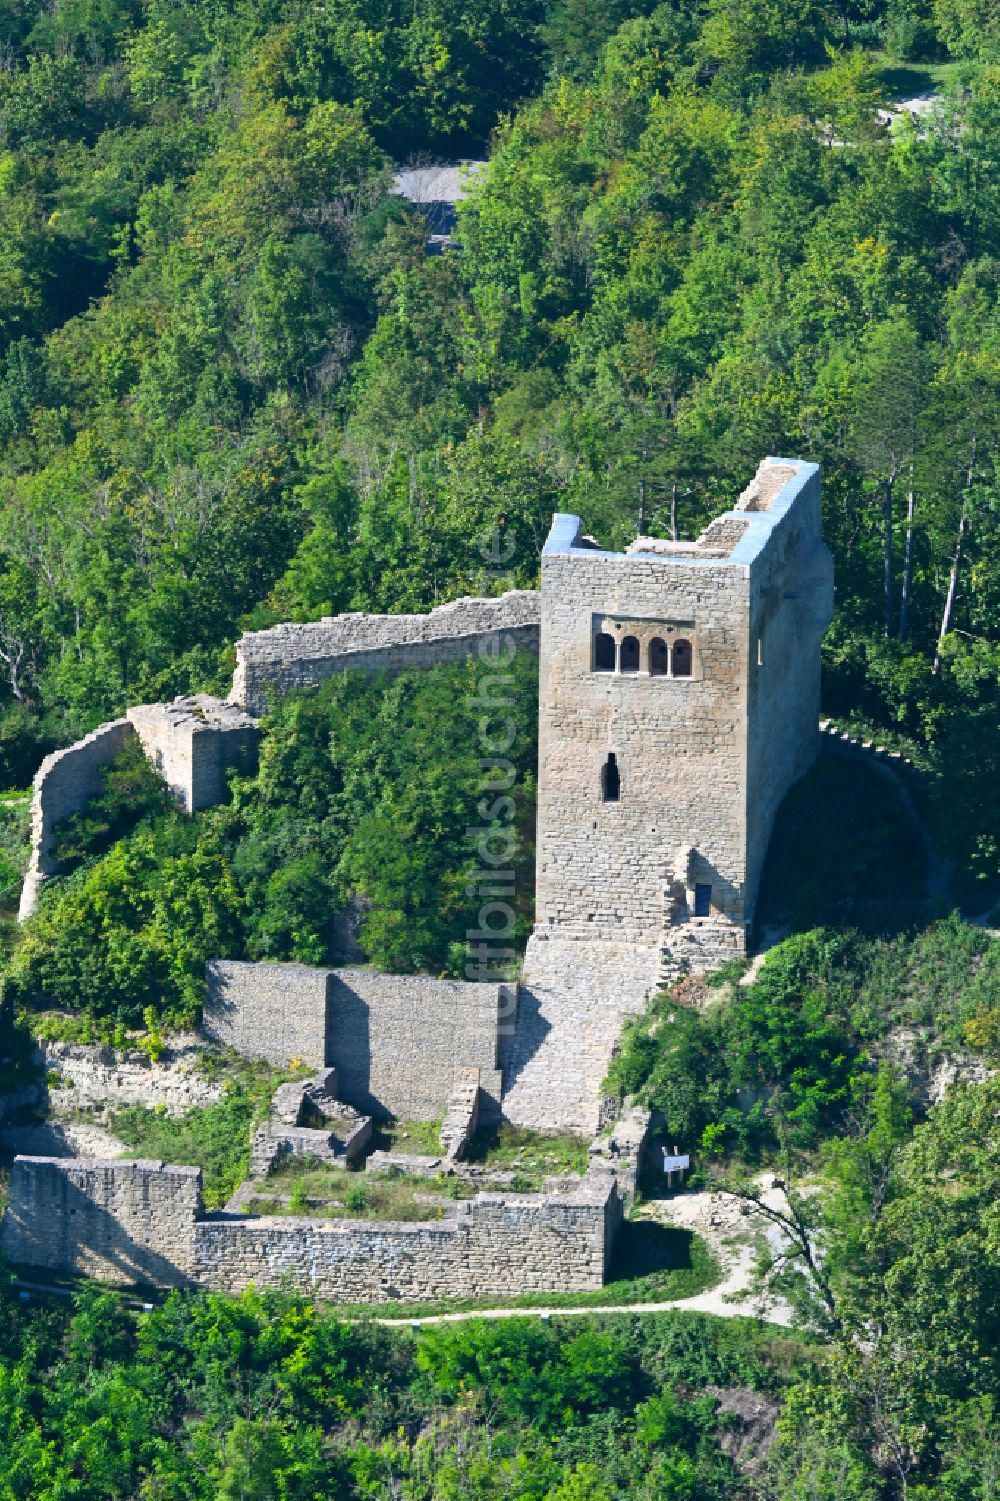 Luftbild Jena - Ruine und Mauerreste der Burgruine Lobdeburg in Jena im Bundesland Thüringen, Deutschland